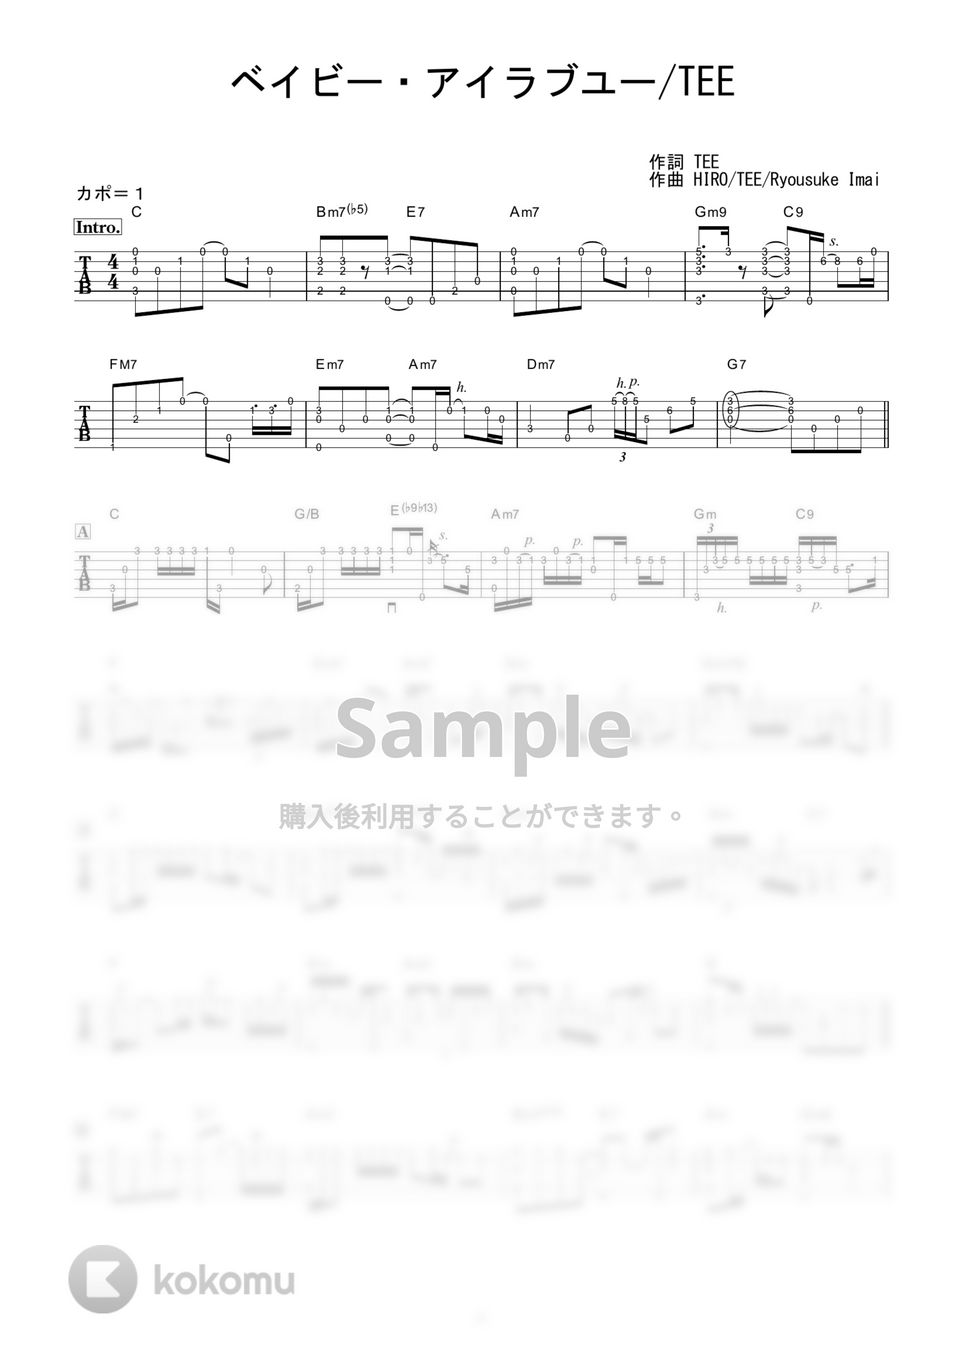 TEE - ベイビー・アイラブユー (ソロギター / ショートアレンジ) by 伴奏屋TAB譜